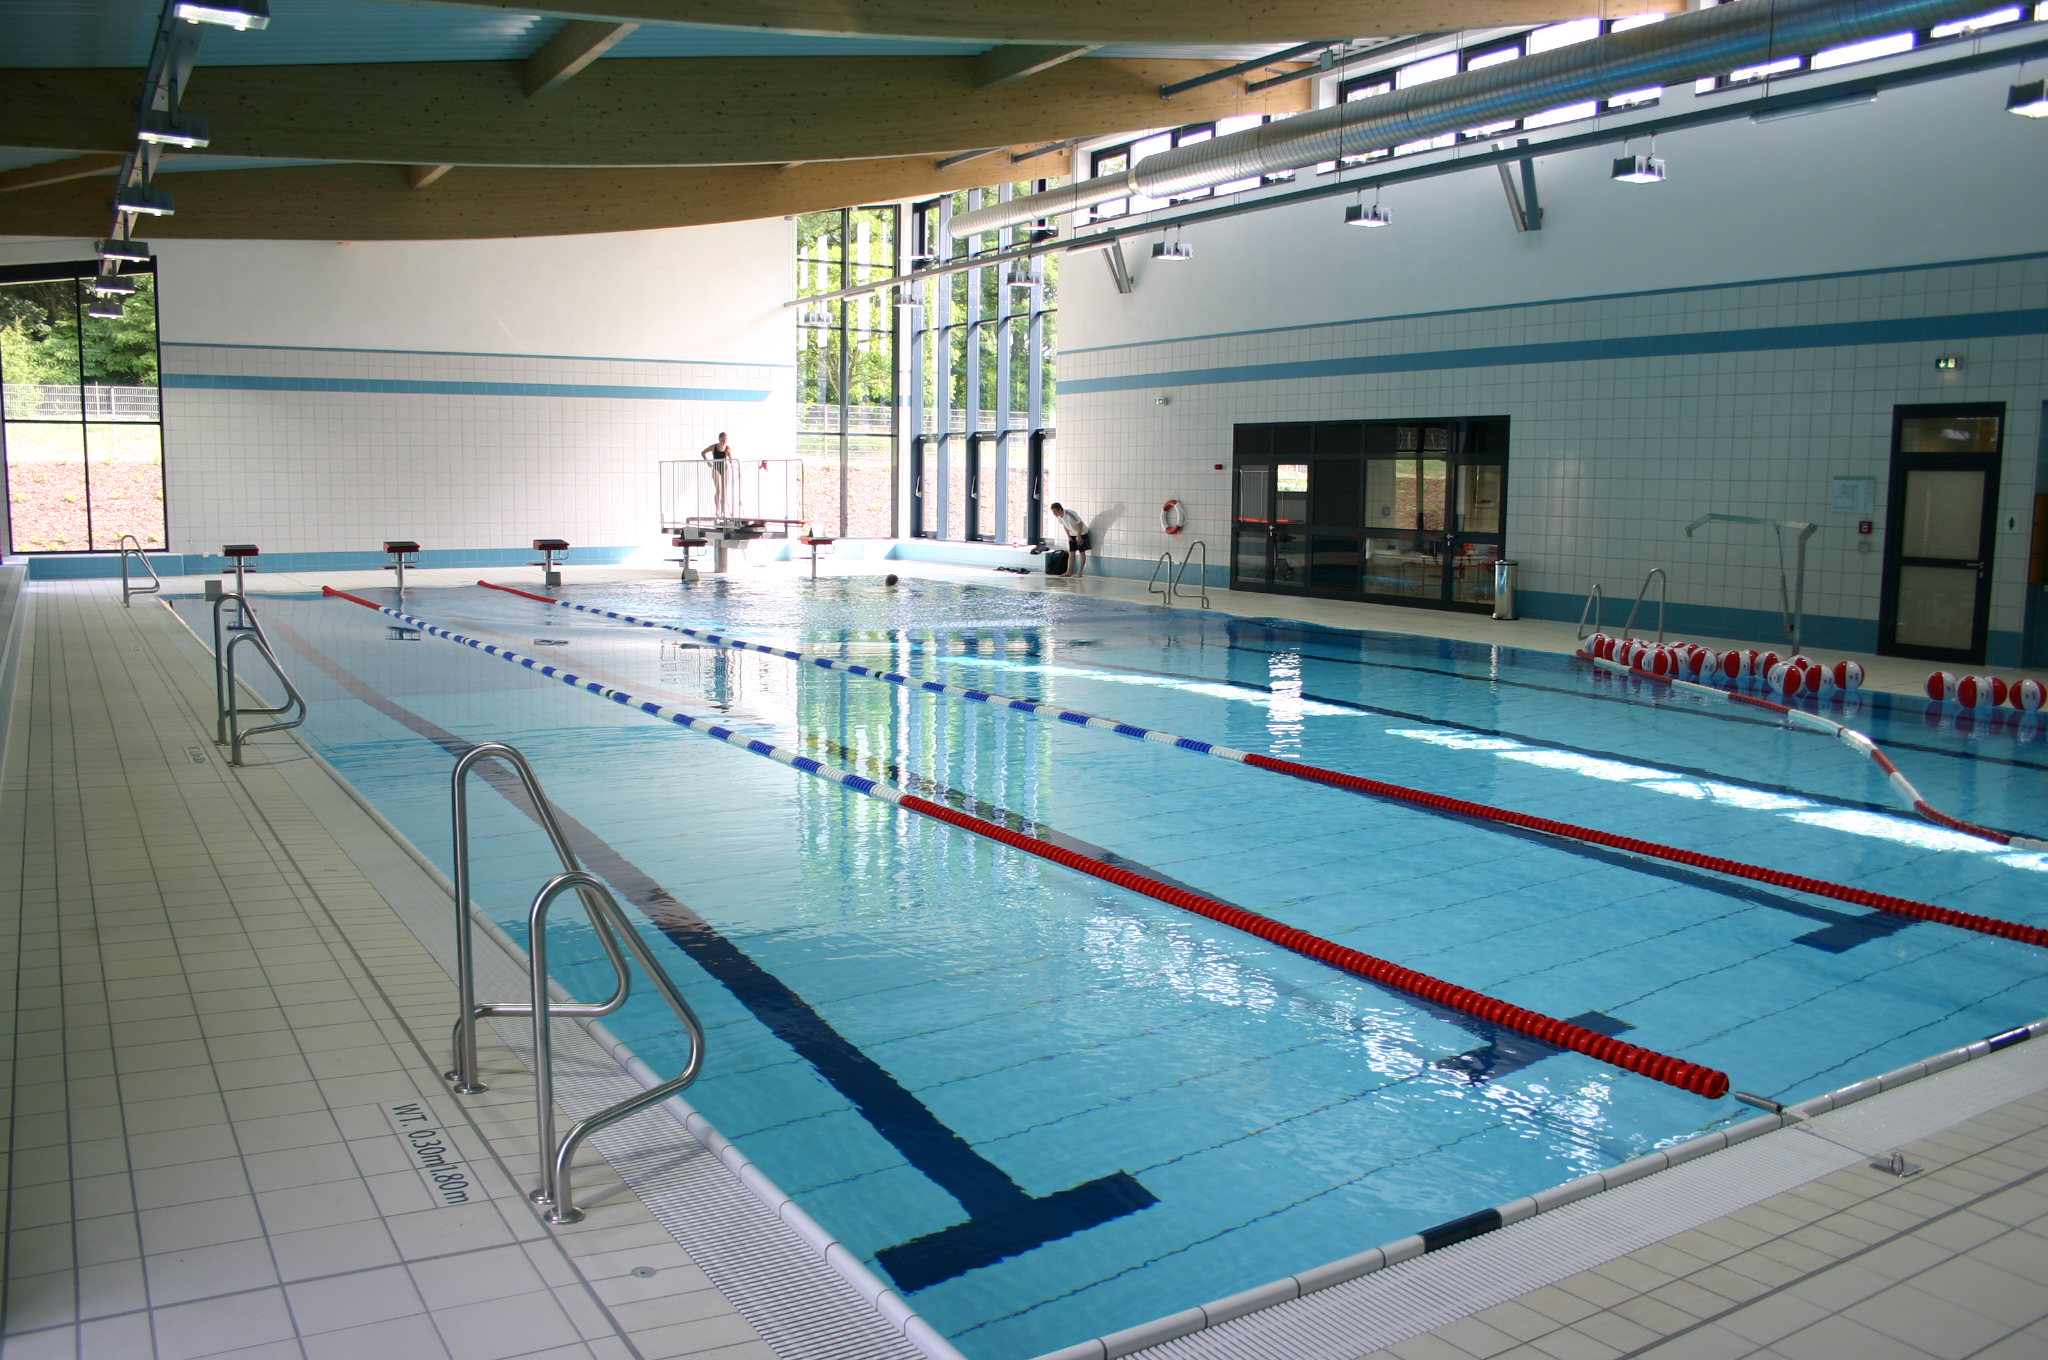 Schwimmbäder sind besonders energieintensive Sportstätten.